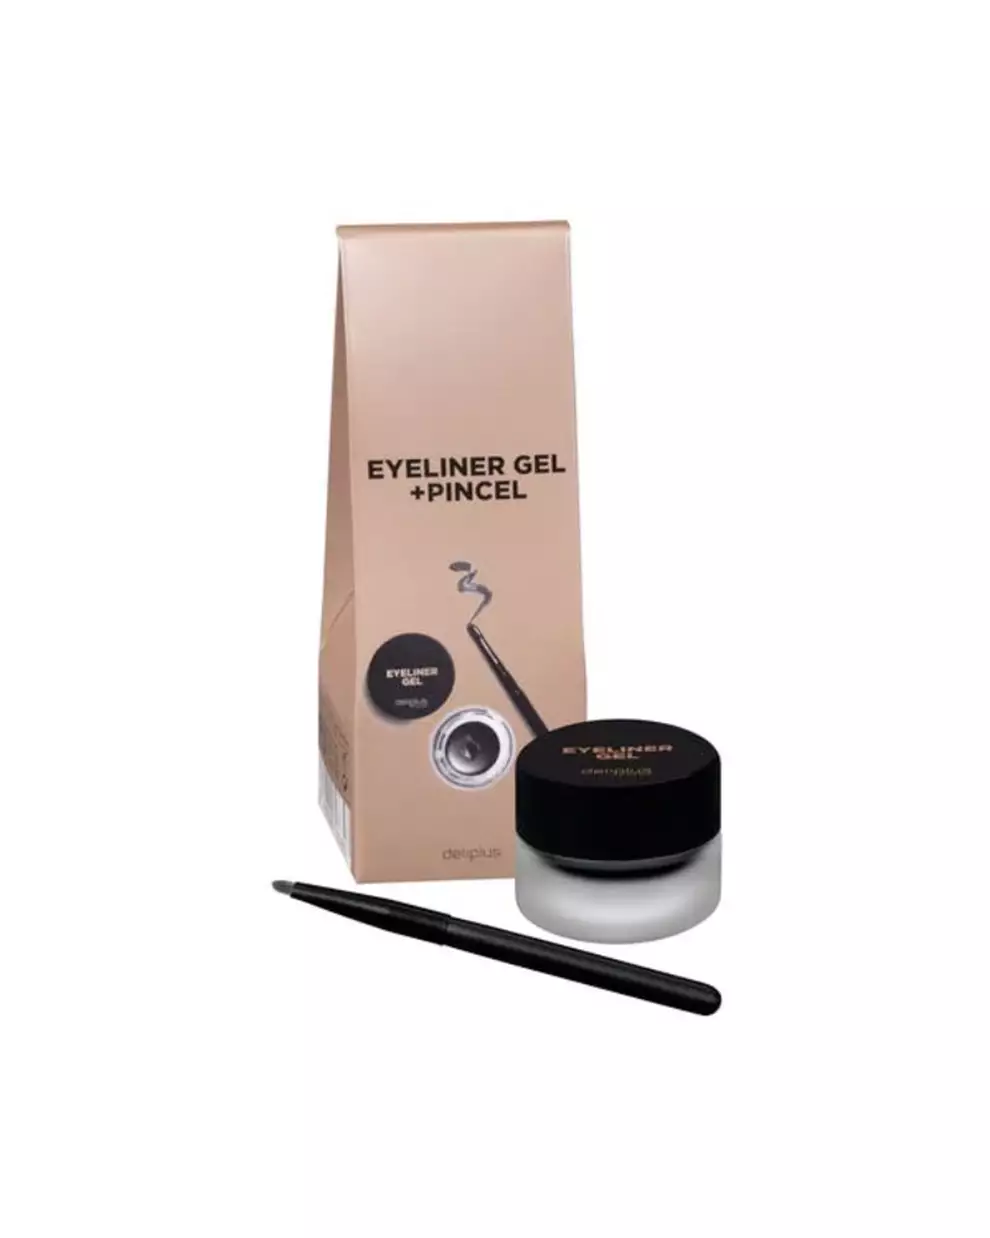 productos de maquillaje baratos Mercadona lujo: eyeliner gel + pincel